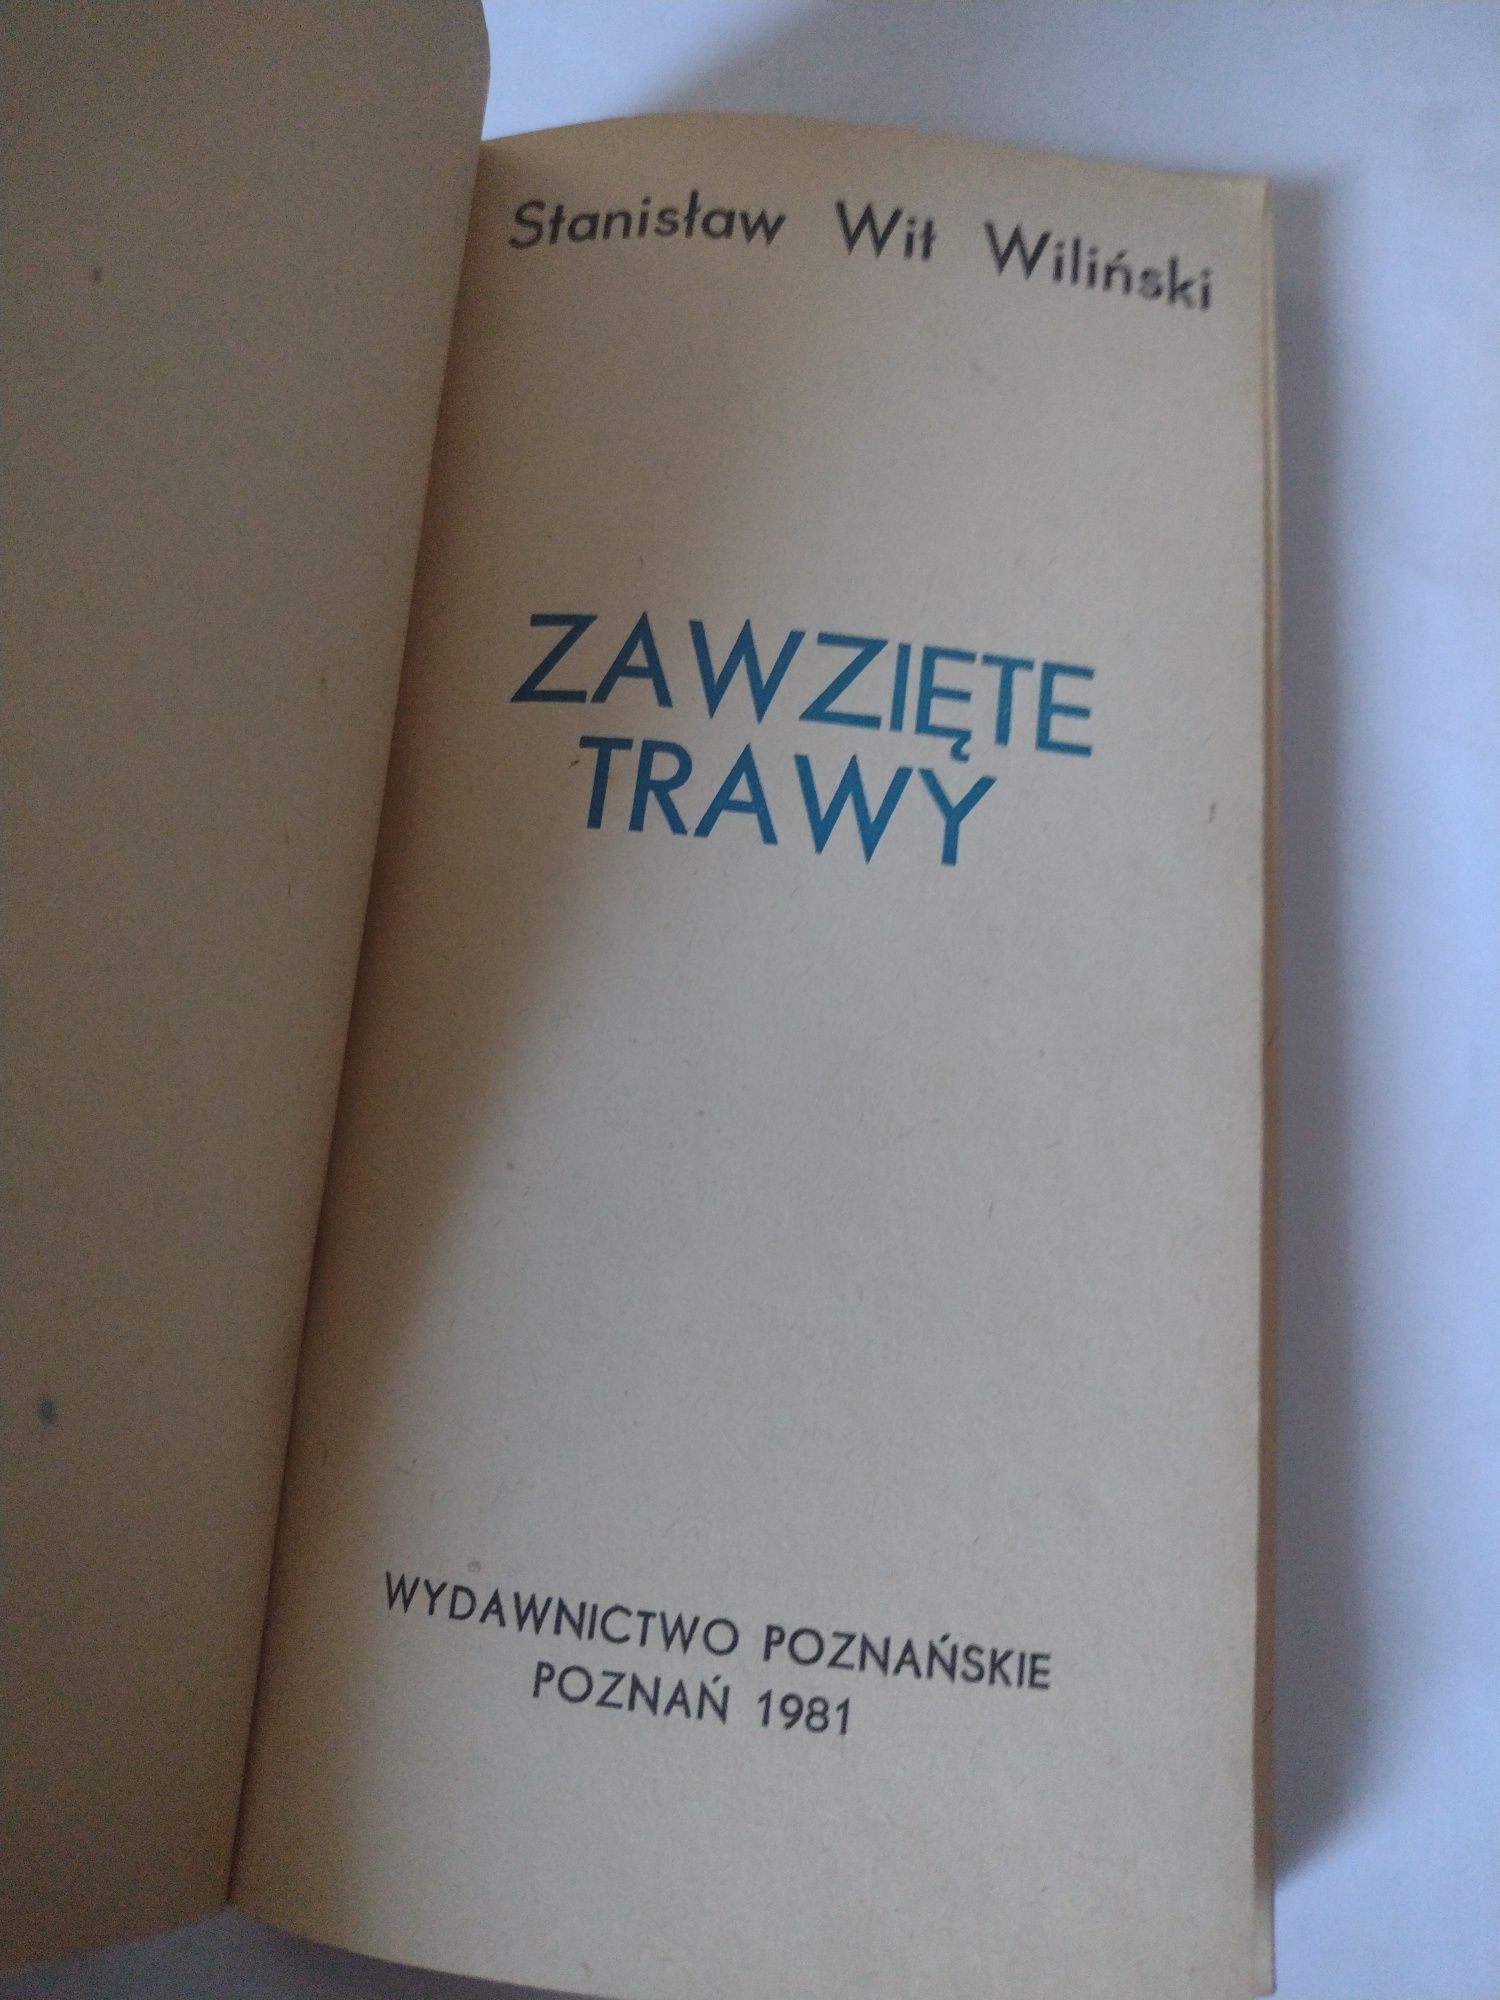 Zawzięte trawy Stanisław Wit Wiliński